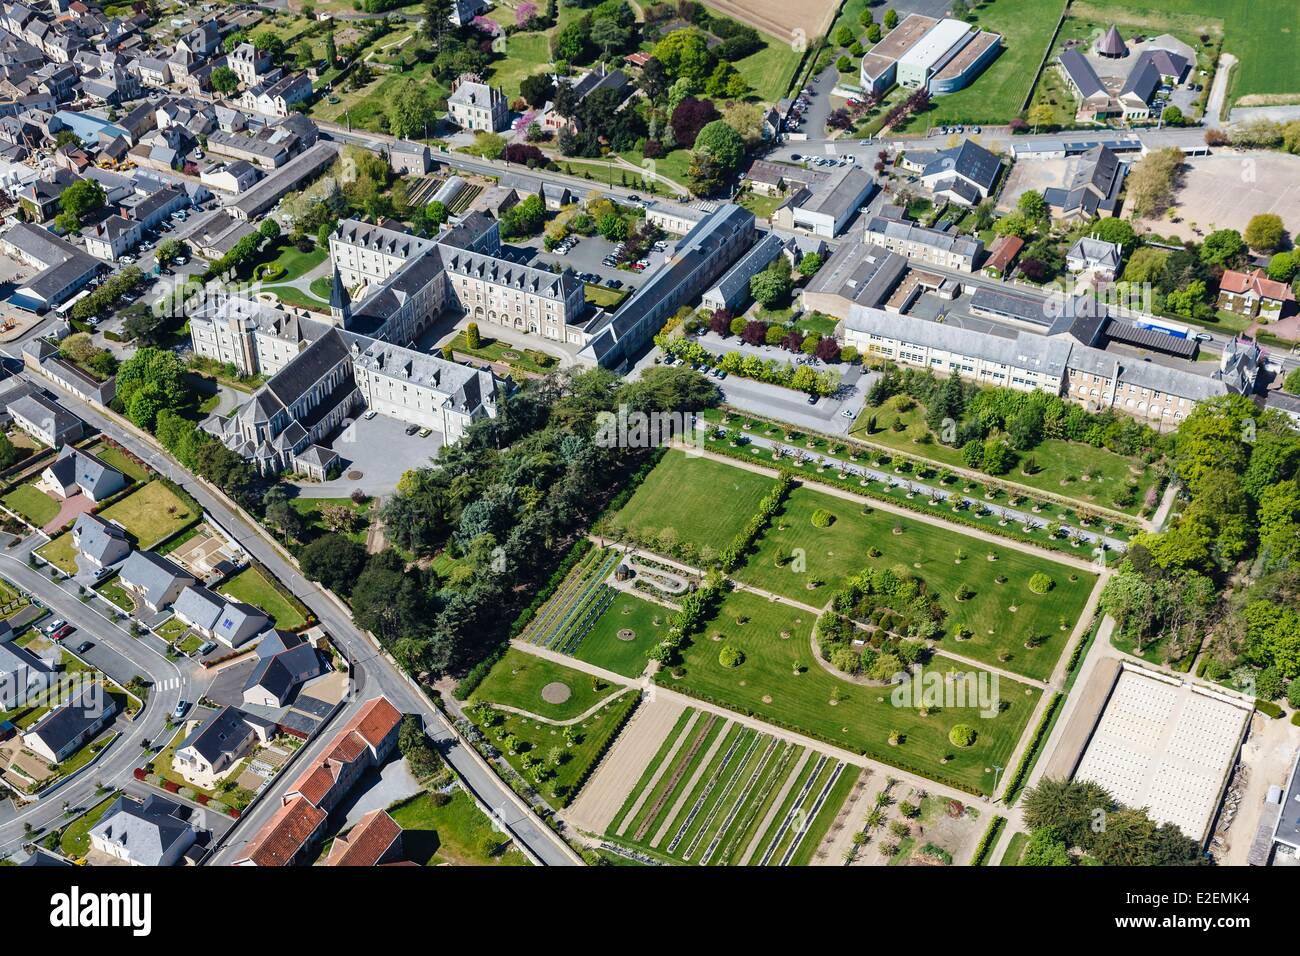 France, Maine et Loire, La PomMeraye, Soeurs de la Providence de la PomMeraye convent (aerial view) Stock Photo